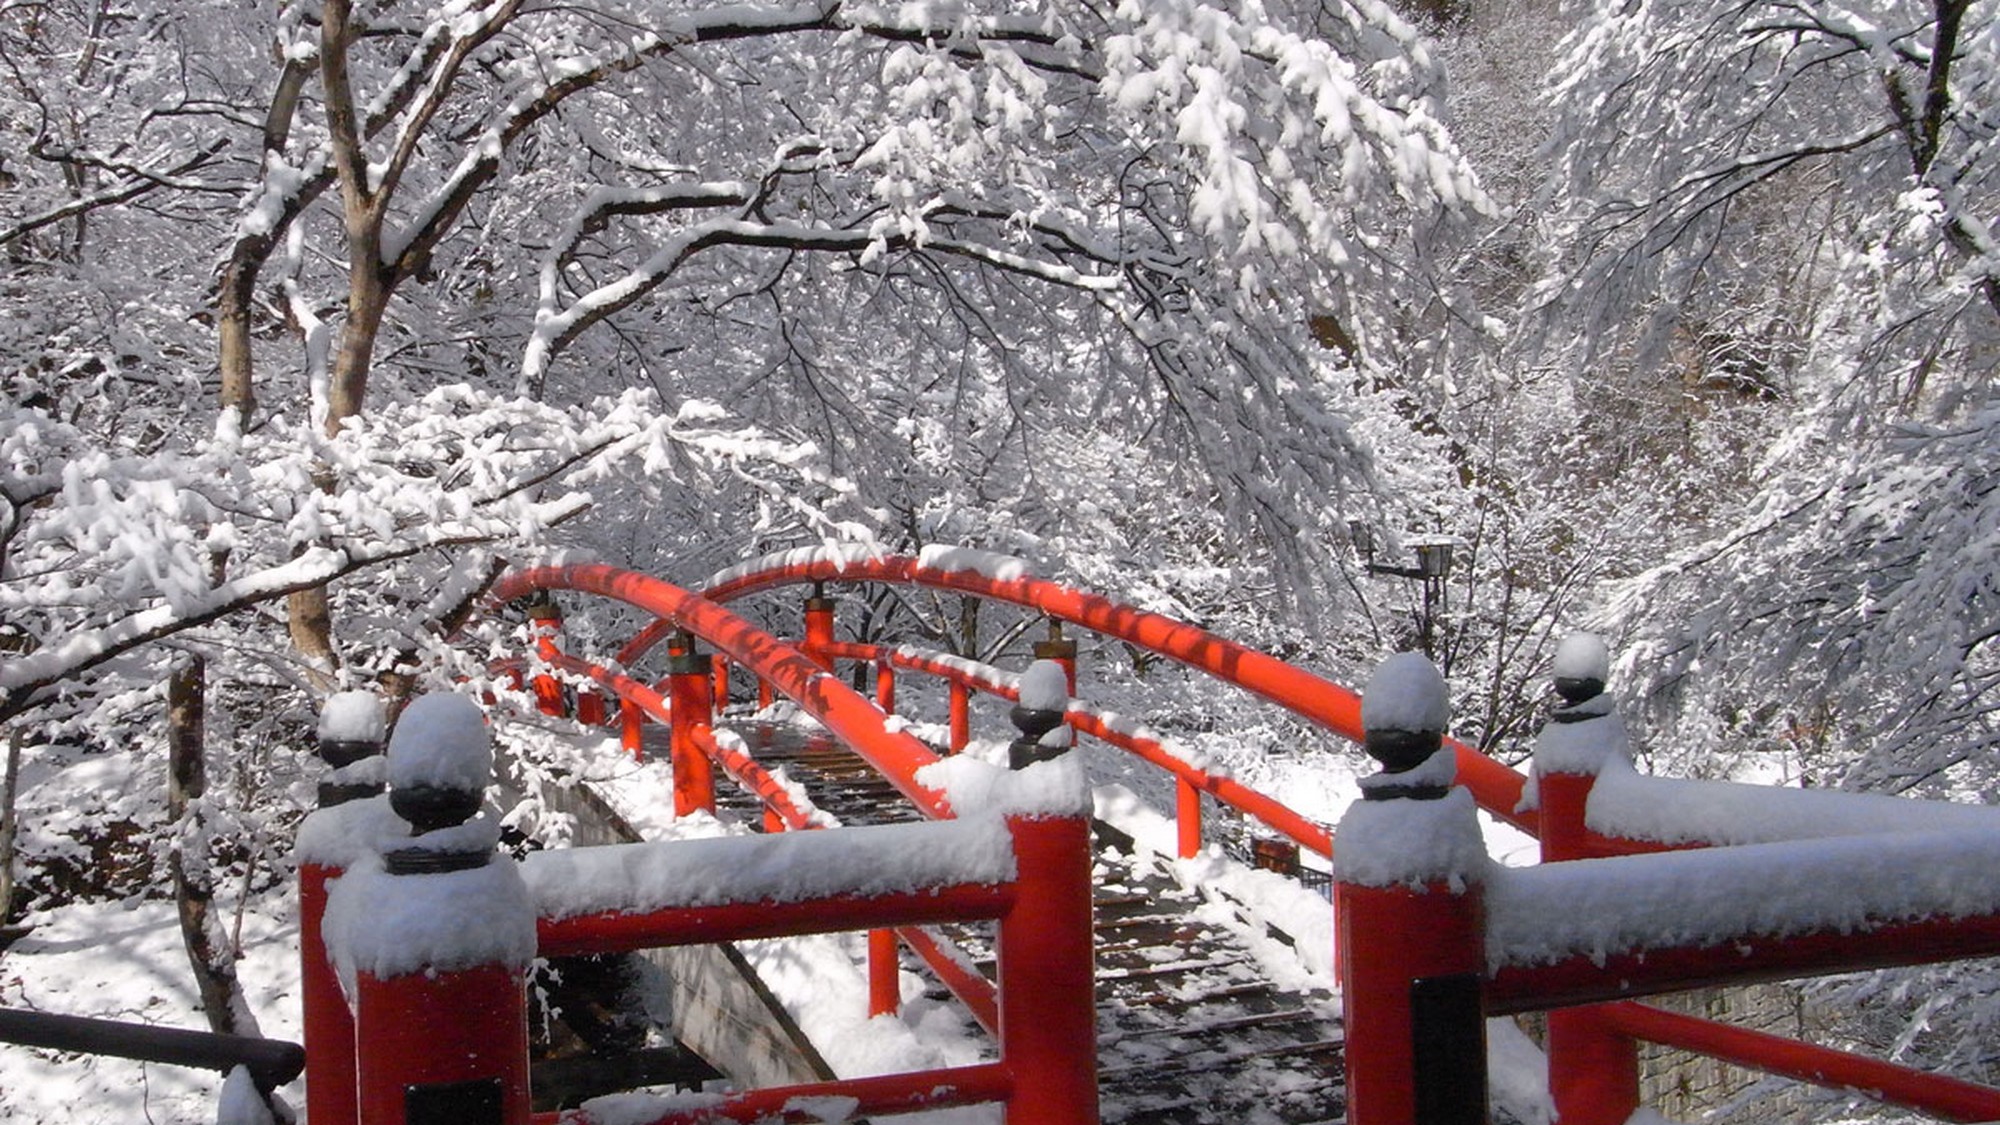 冬の河鹿橋。雪景色と朱色の橋のコントラストが綺麗